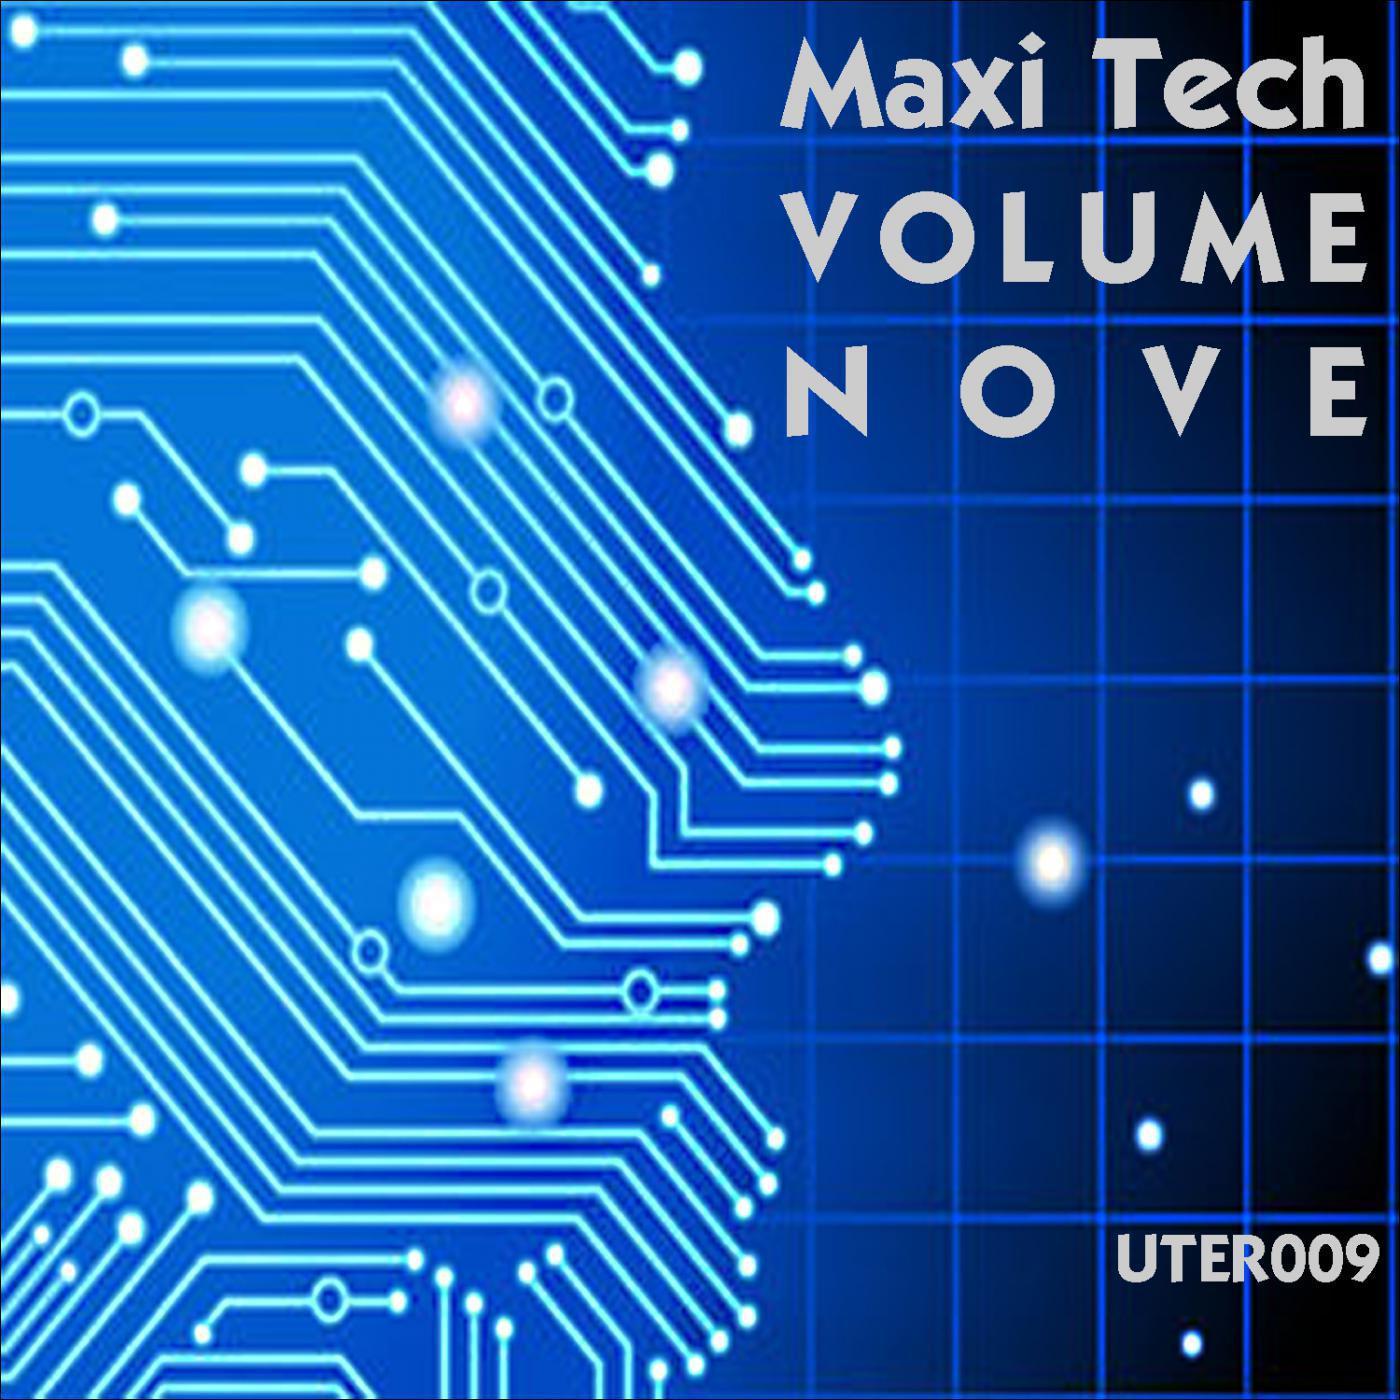 Maxi Tech, Vol. NOVE